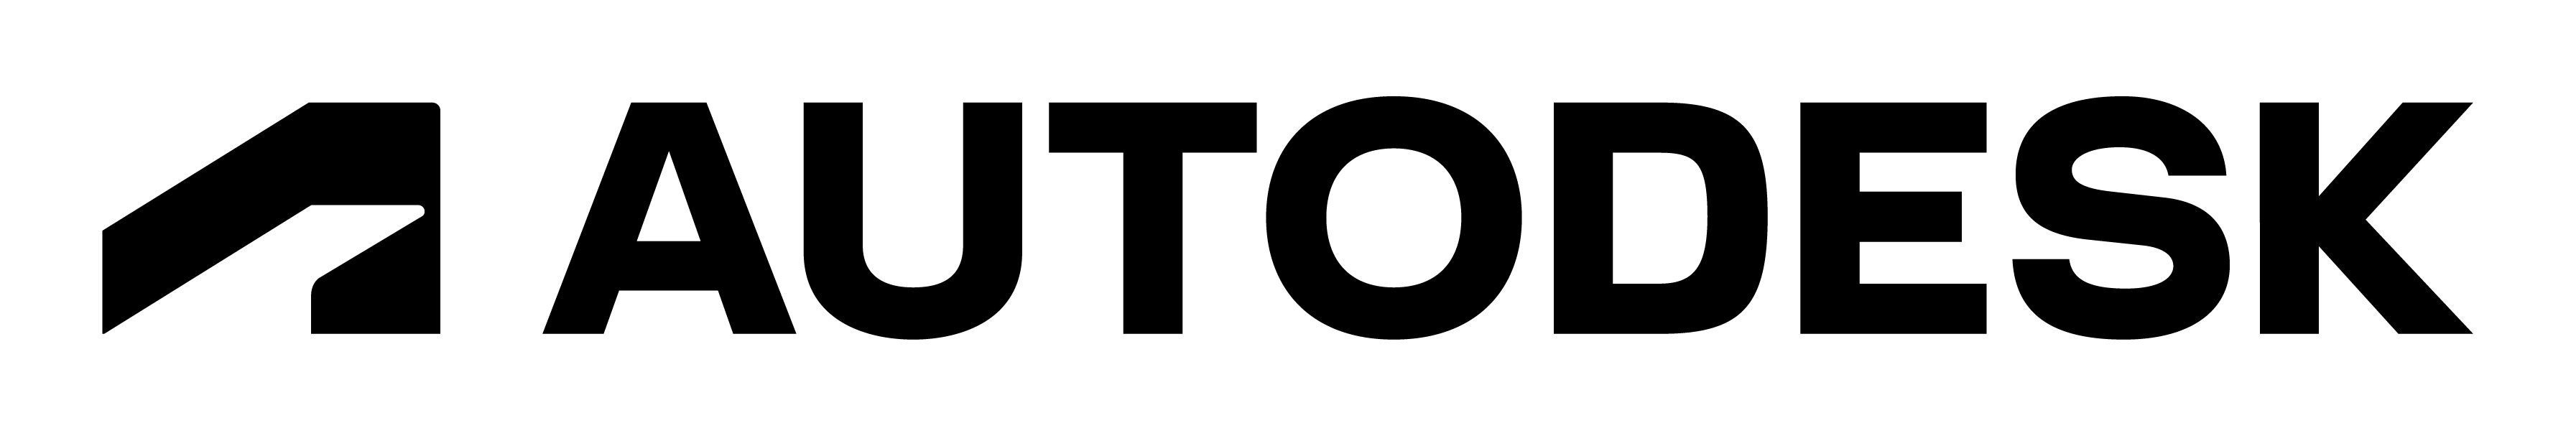 autodesk-logo-primary-rgb-black-large logo